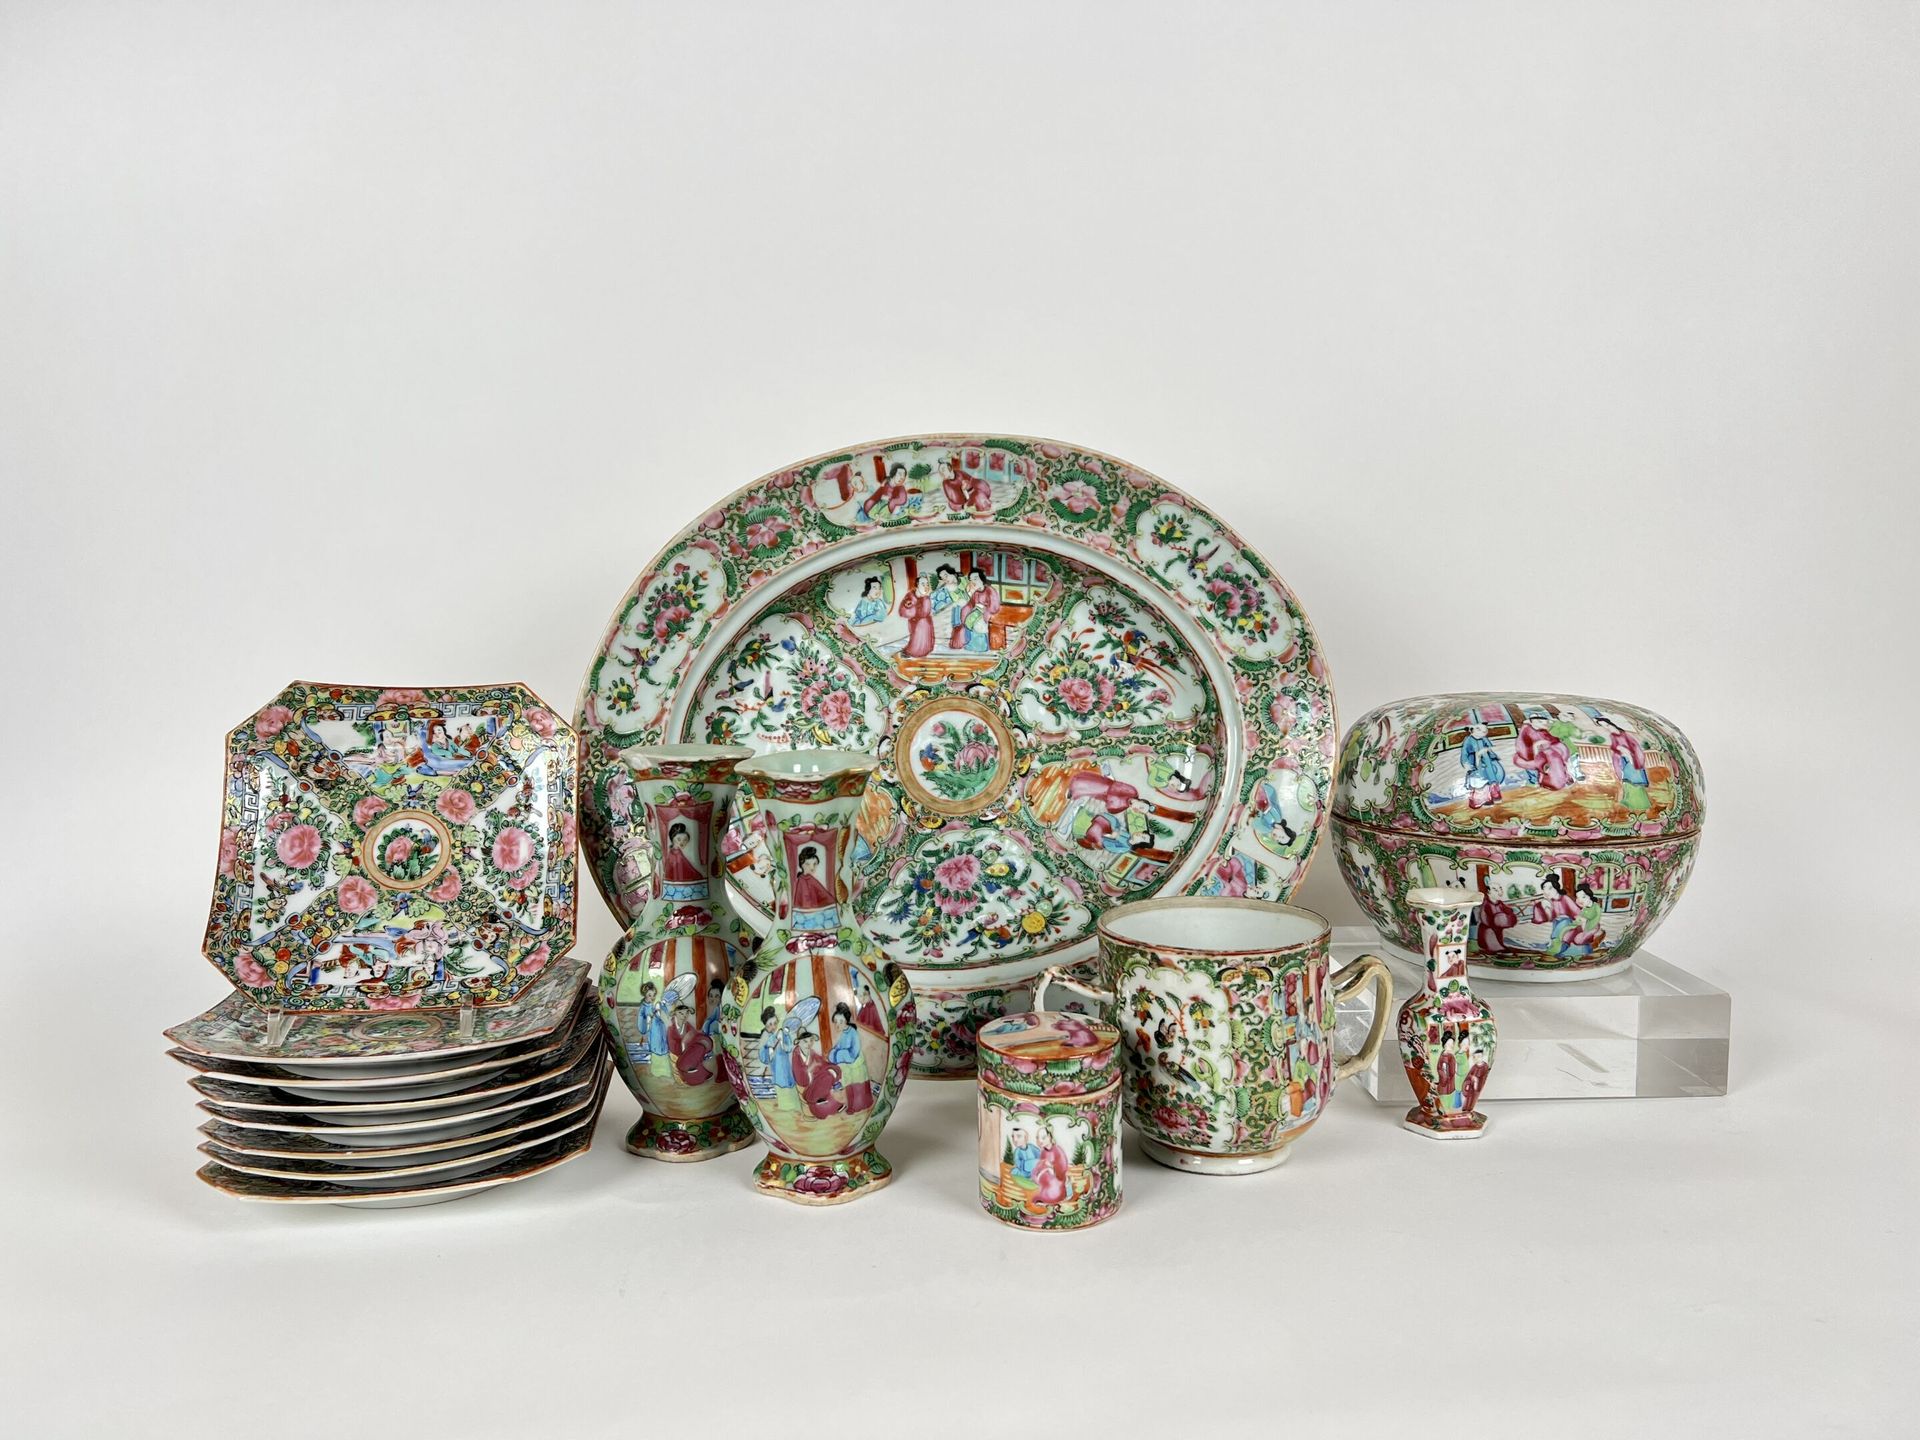 Null 中国，坎顿
广州瓷器的宫廷场景多色和金色装饰盘，各种设计，包括。 
- 1个椭圆盘
- 8 碗
- 1个糖碗
2个有盖盒子和3个类似型号的花瓶。
(事&hellip;